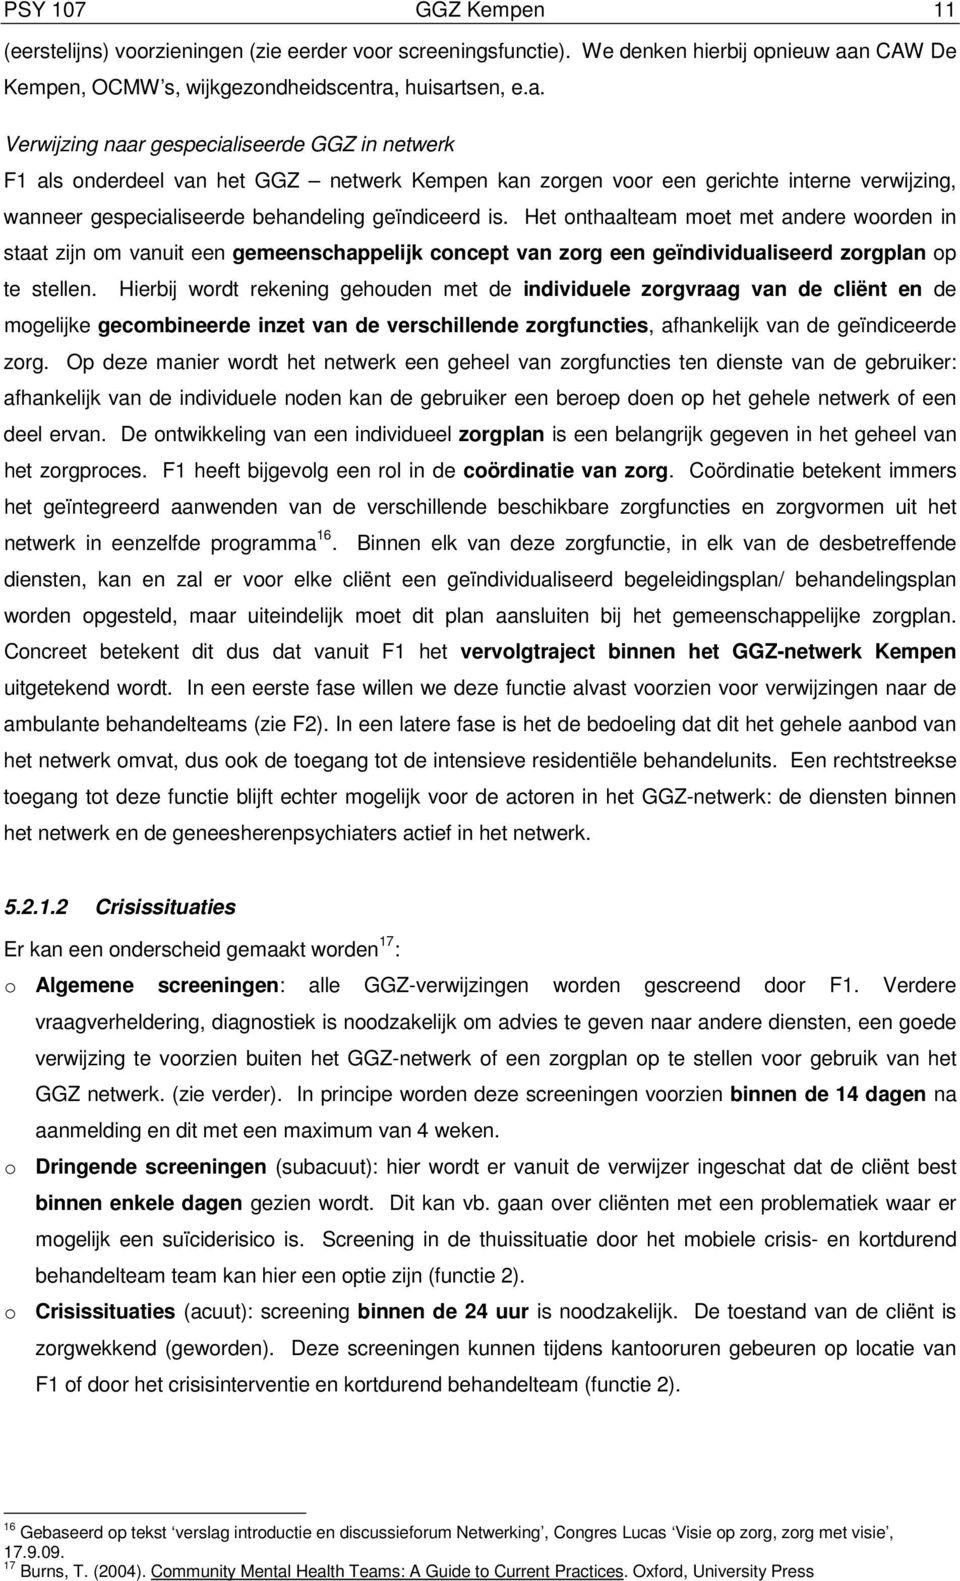 huisartsen, e.a. Verwijzing naar gespecialiseerde GGZ in netwerk F1 als onderdeel van het GGZ netwerk Kempen kan zorgen voor een gerichte interne verwijzing, wanneer gespecialiseerde behandeling geïndiceerd is.